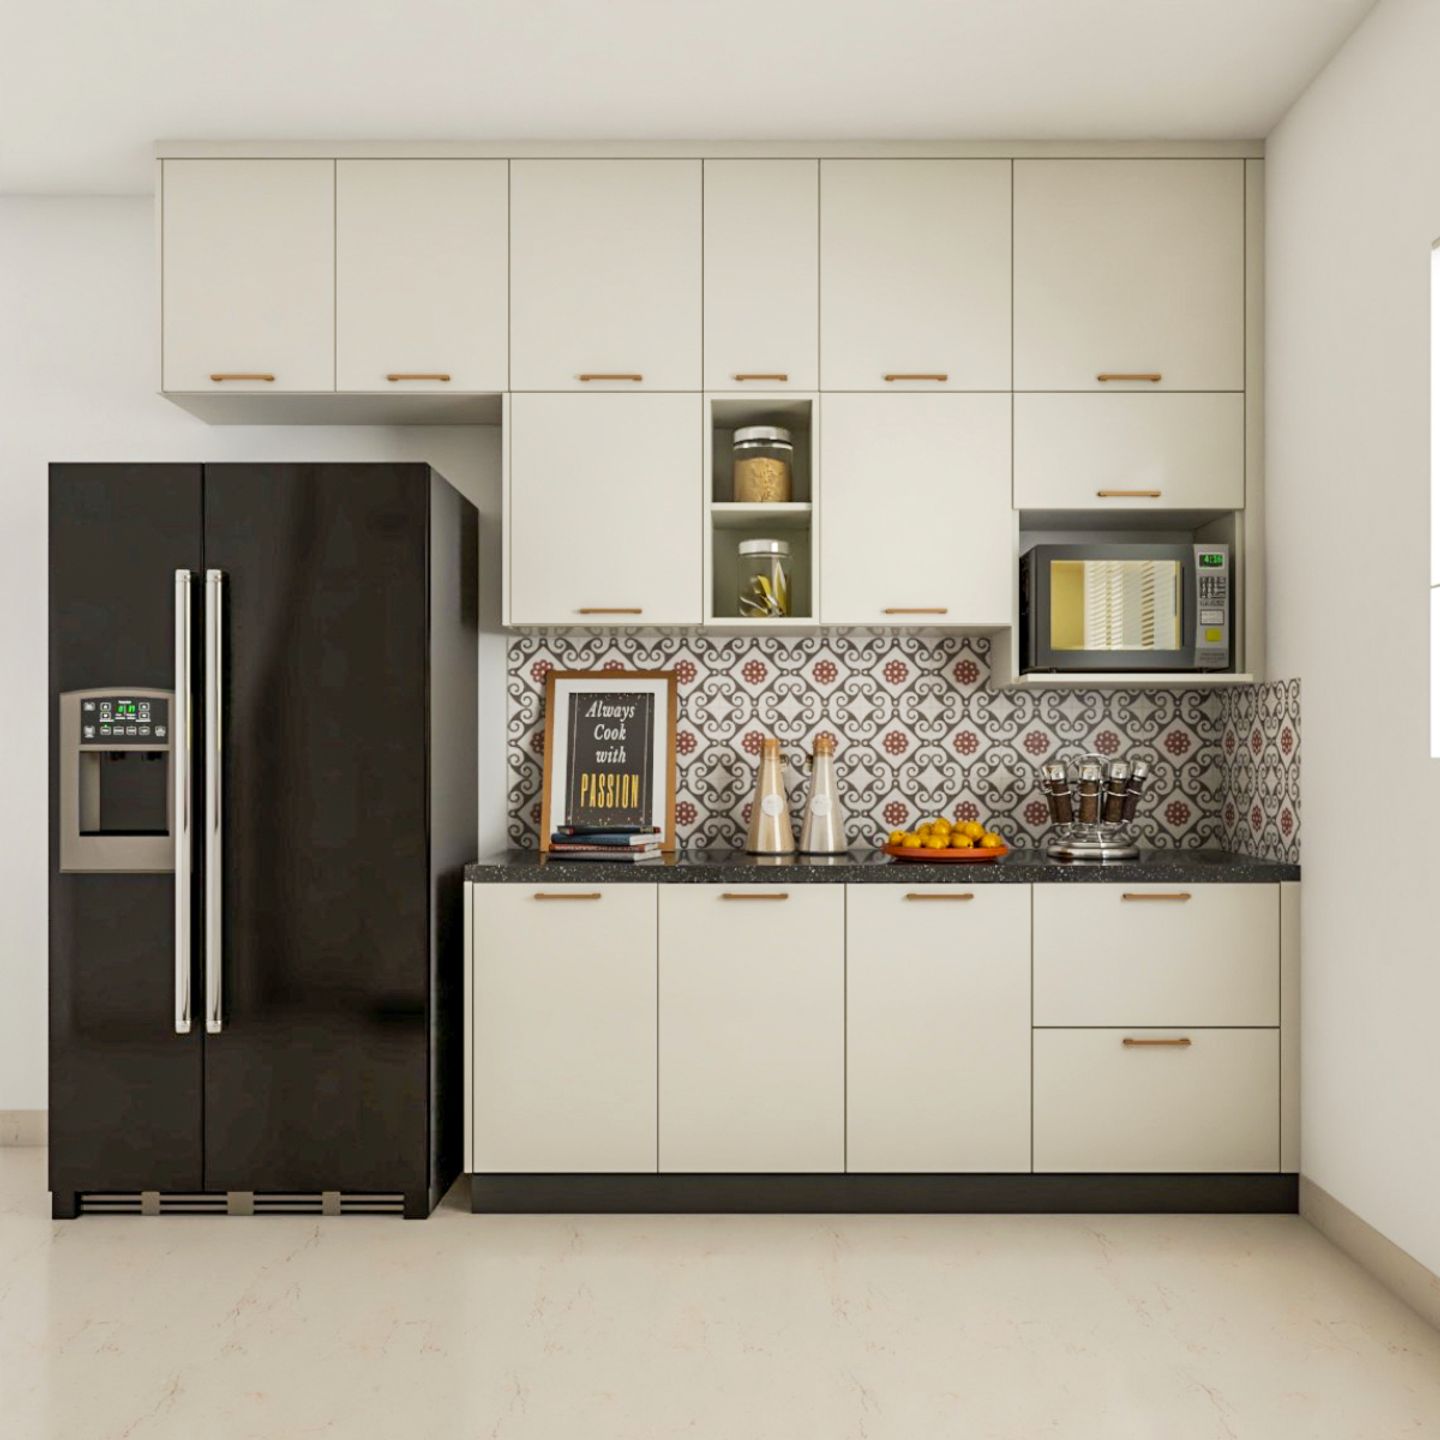 Modern White Modular Kitchen Design With Multiple Storage Cabinets